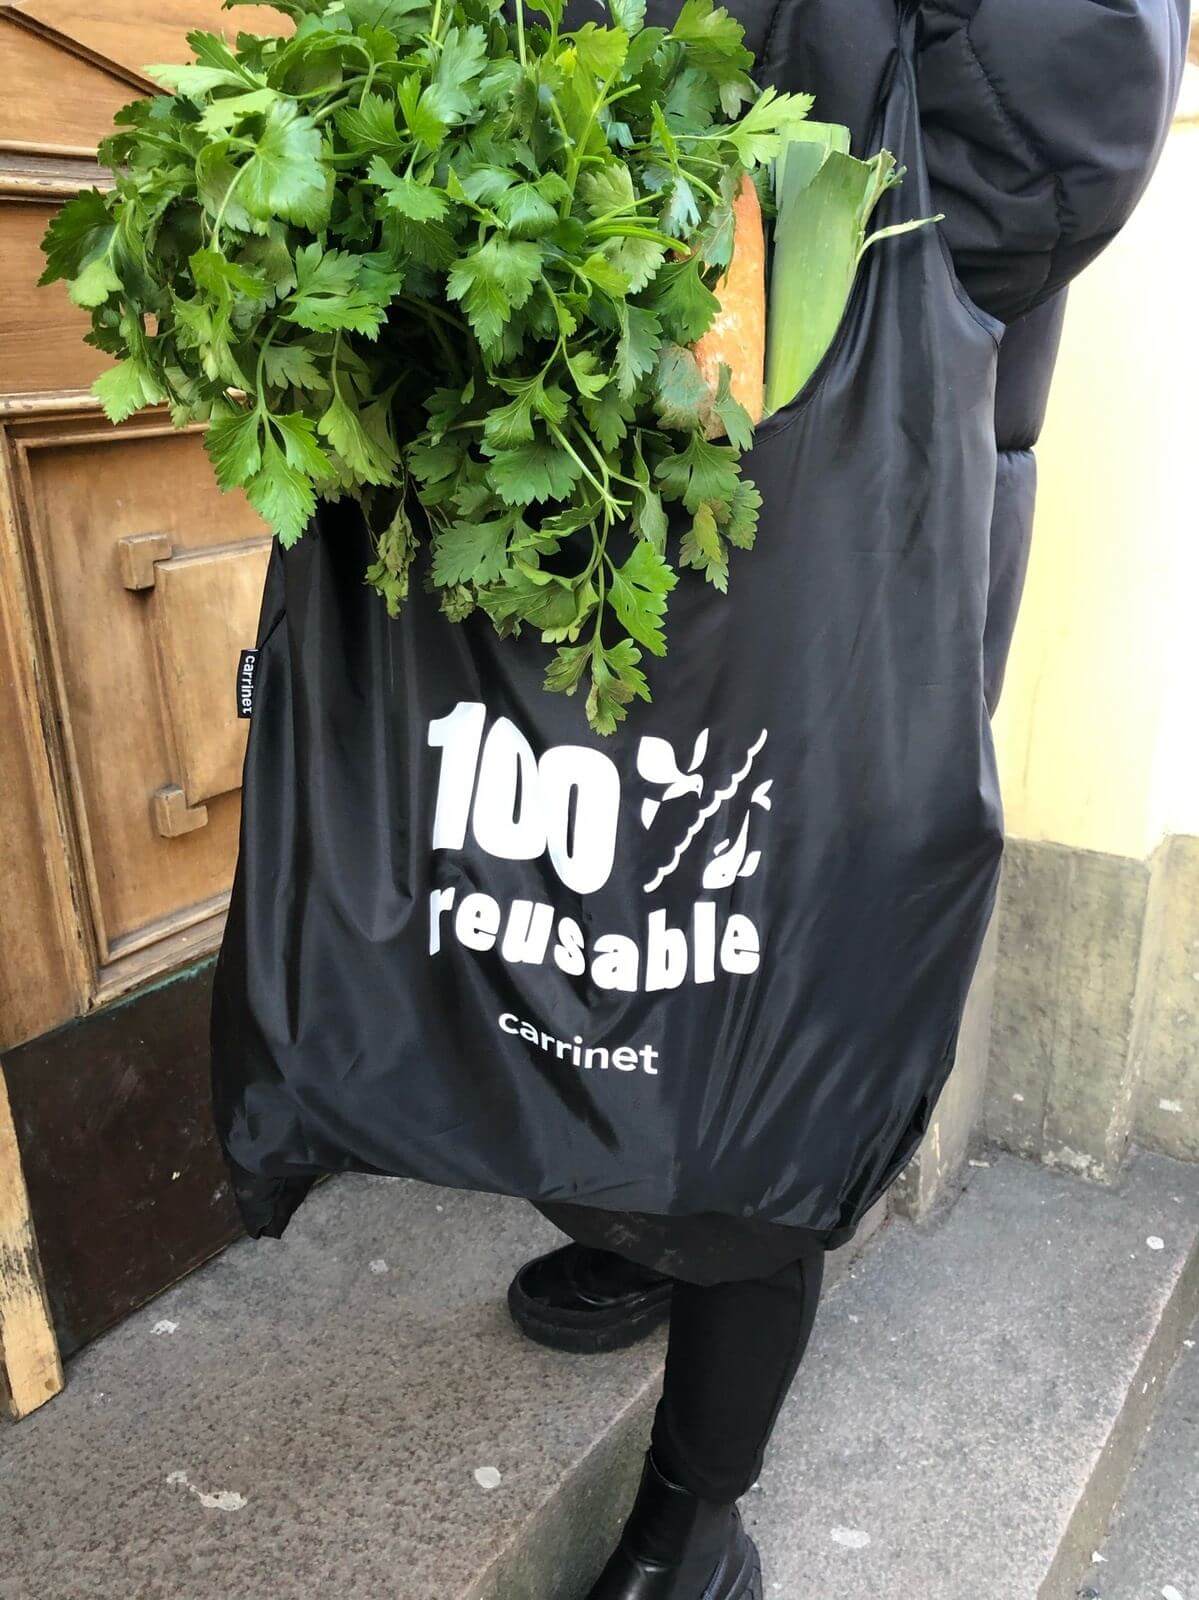 Shop Bag - "100% Reusable" - SVART